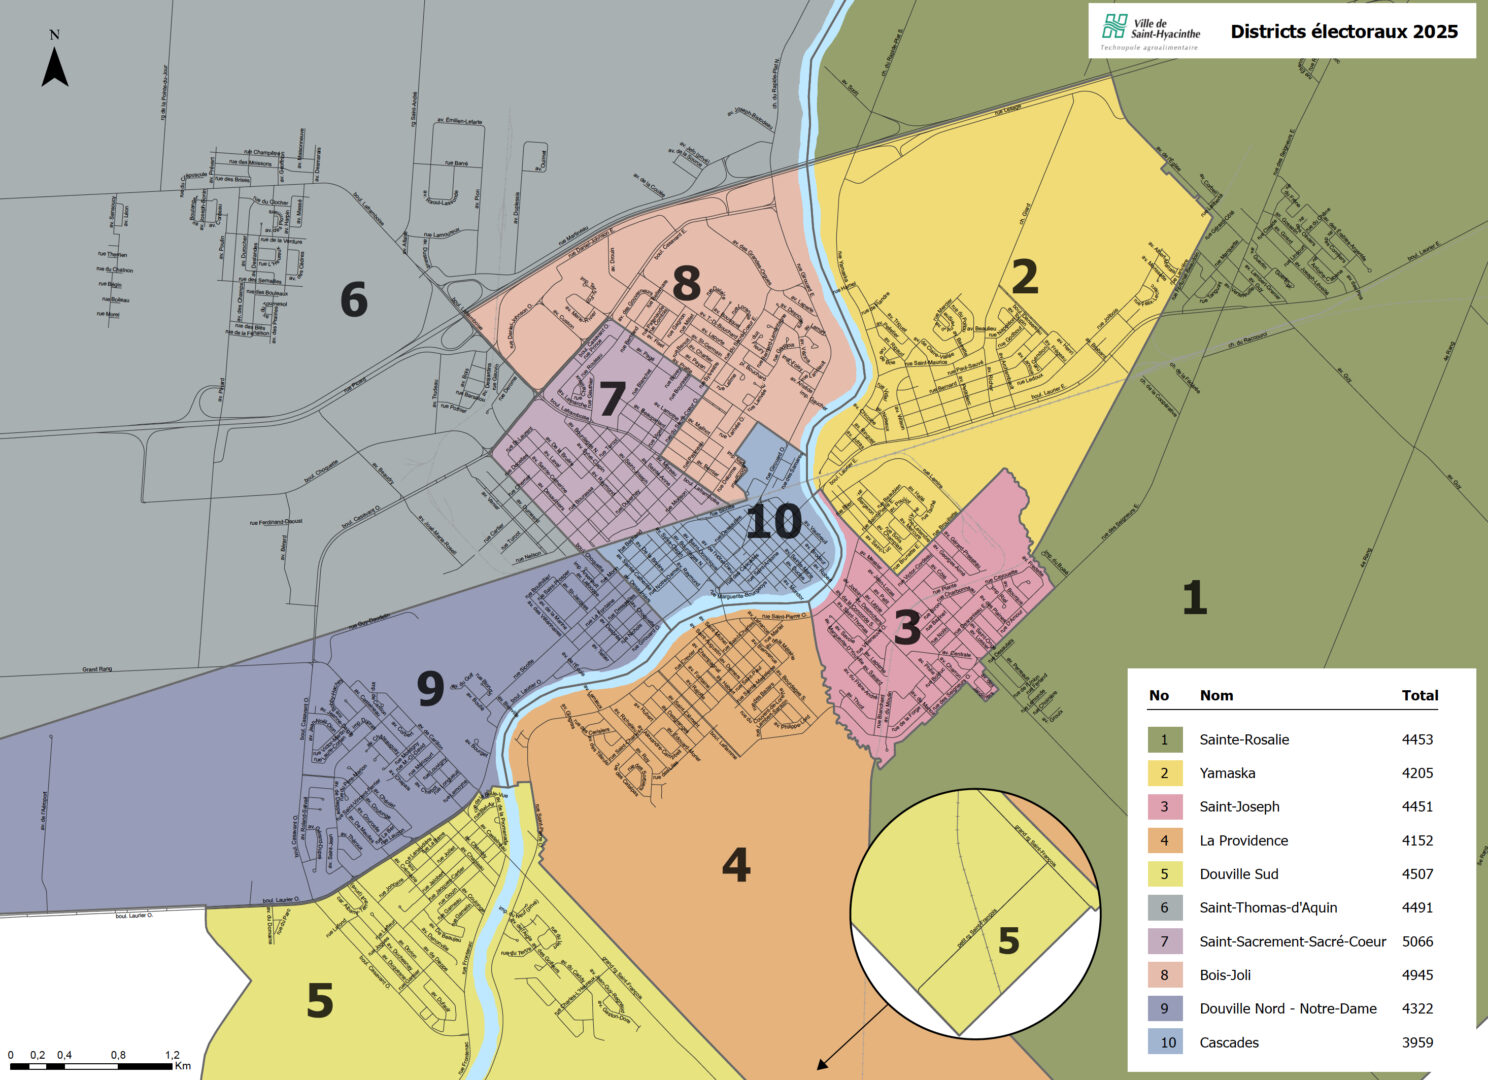 La future carte des districts électoraux de Saint-Hyacinthe pour les élections municipales de 2025.